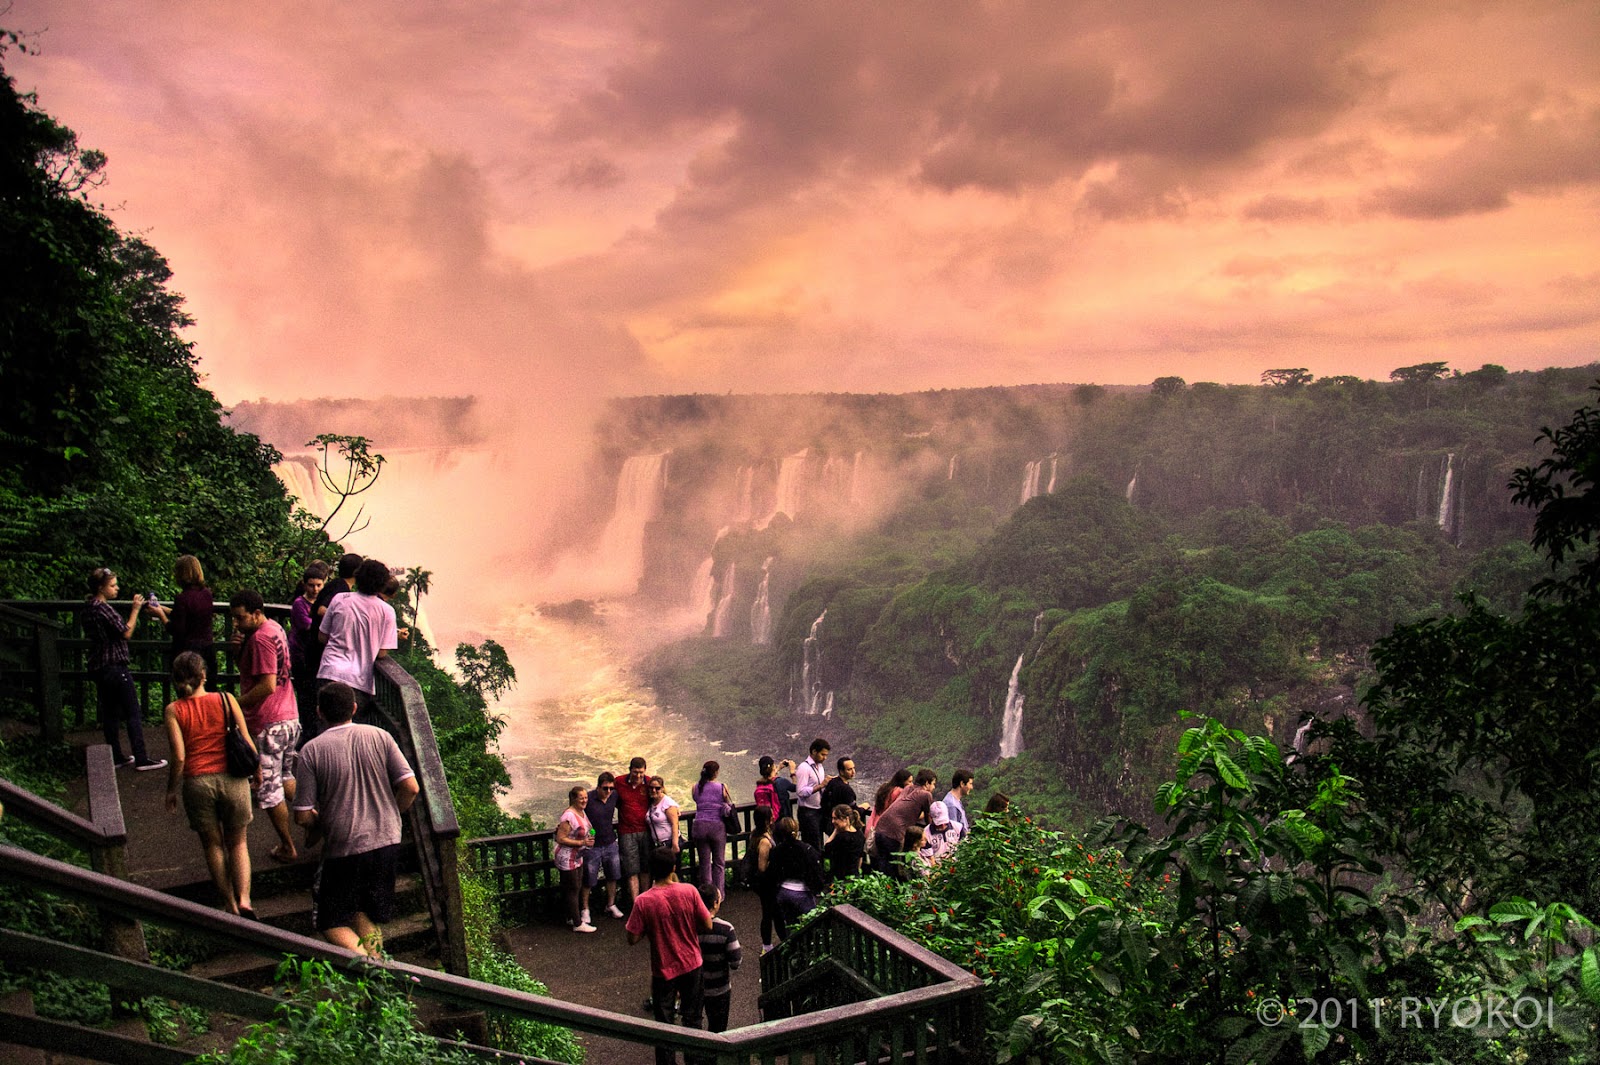 ... do Brasil: Cataratas do Iguaçu - Foz do Iguaçu, Paraná, Brasil by